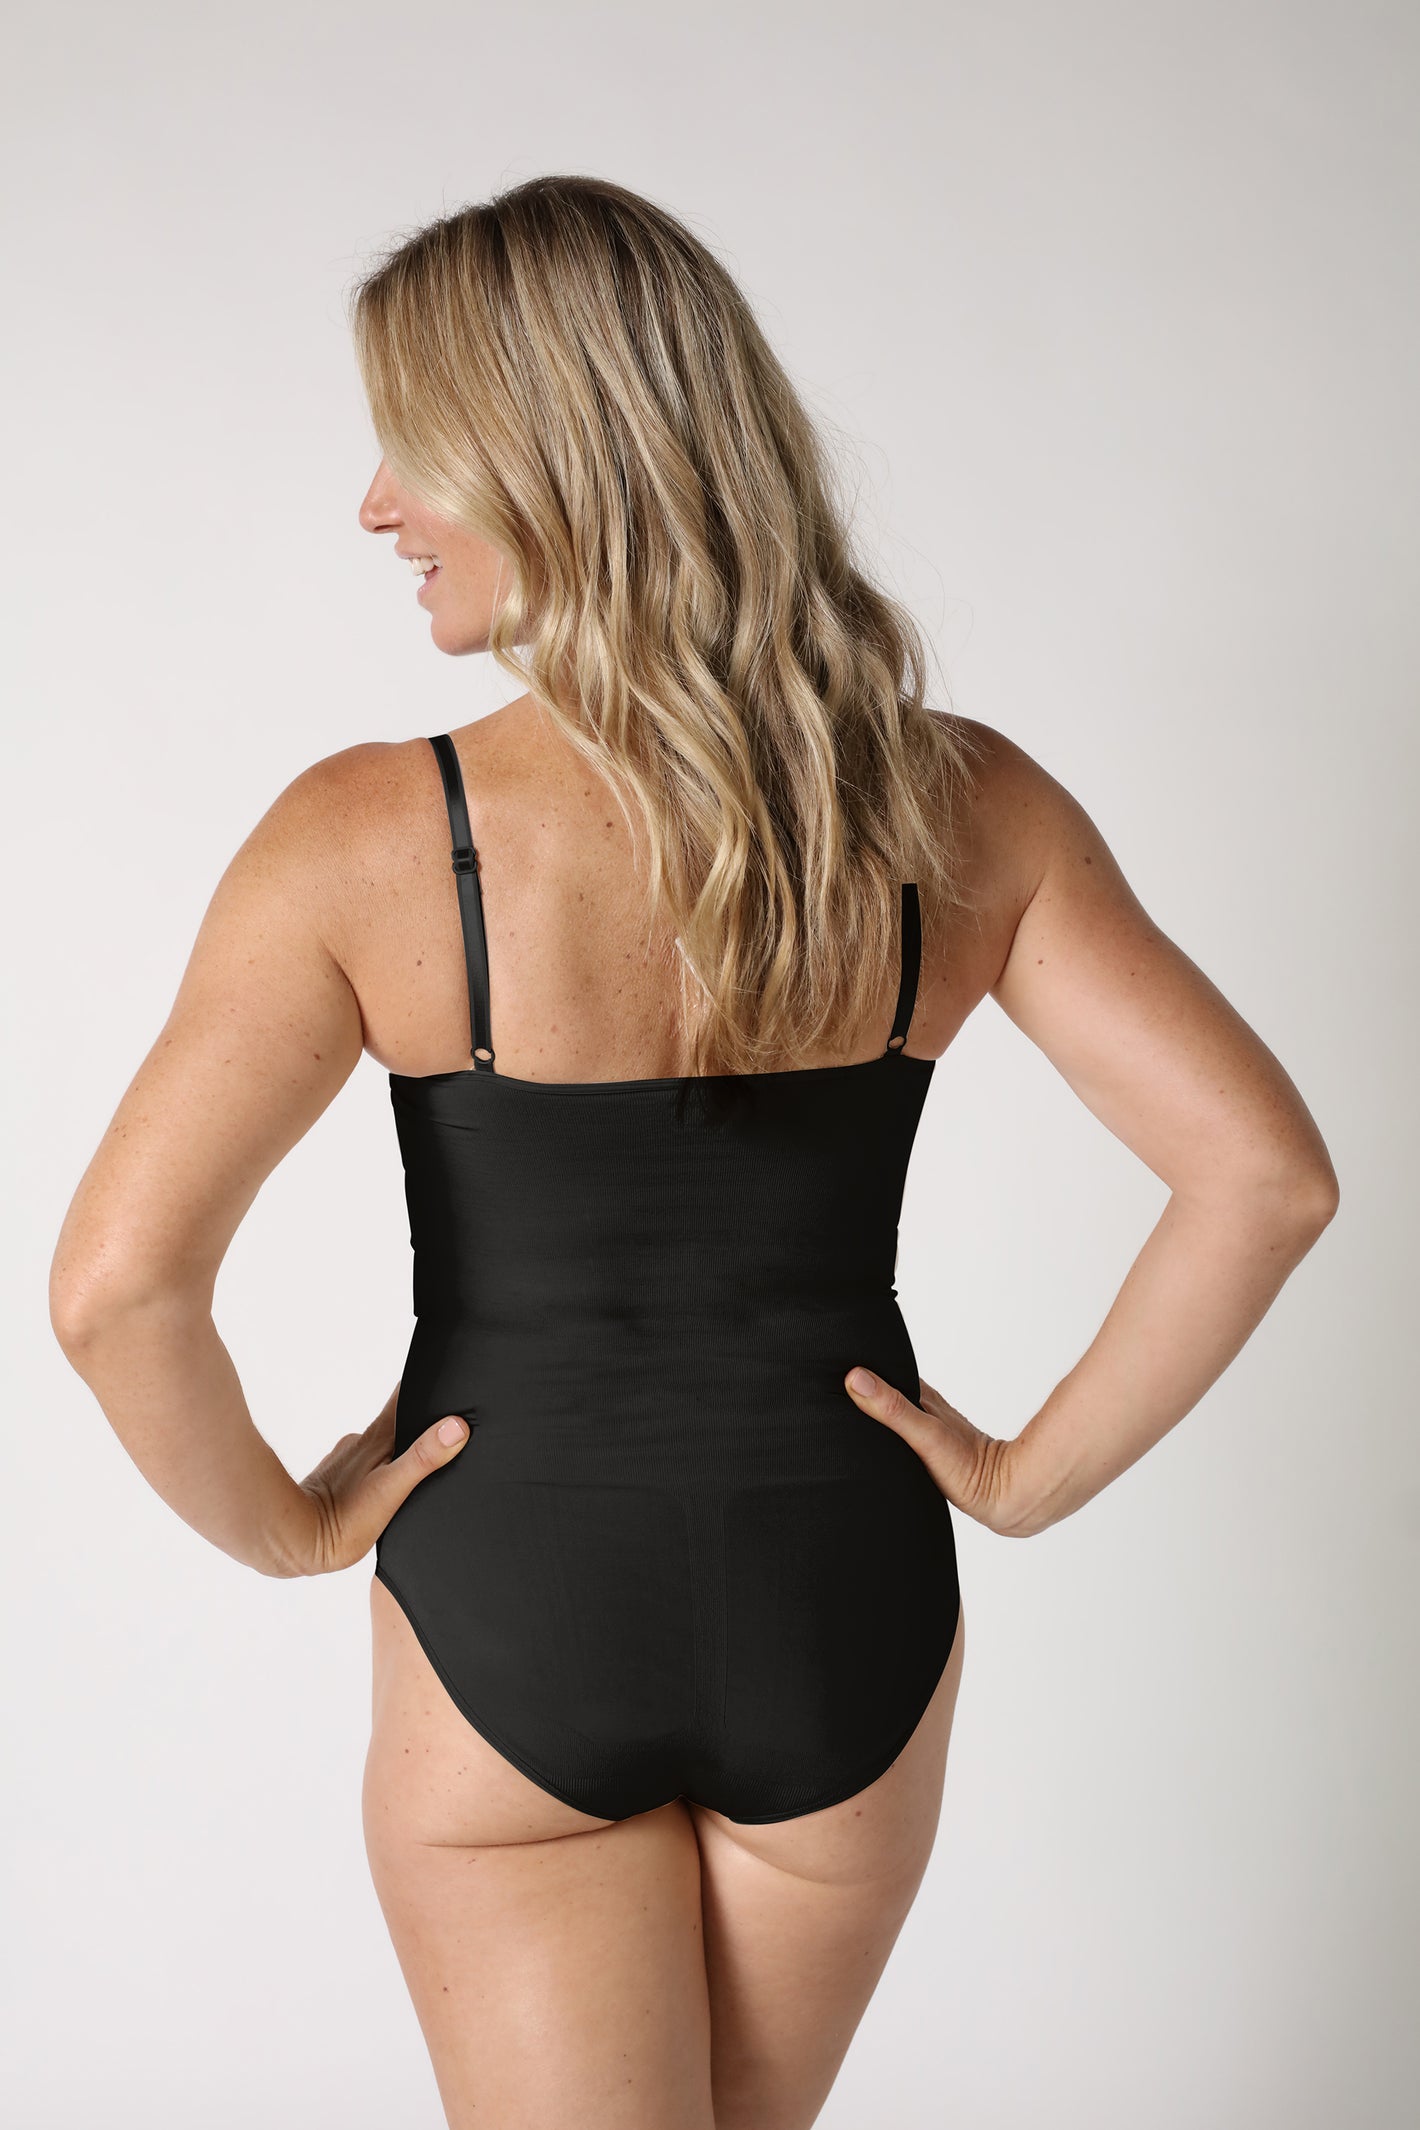  Bodysuits For Women Shapewear Tummy Control Black